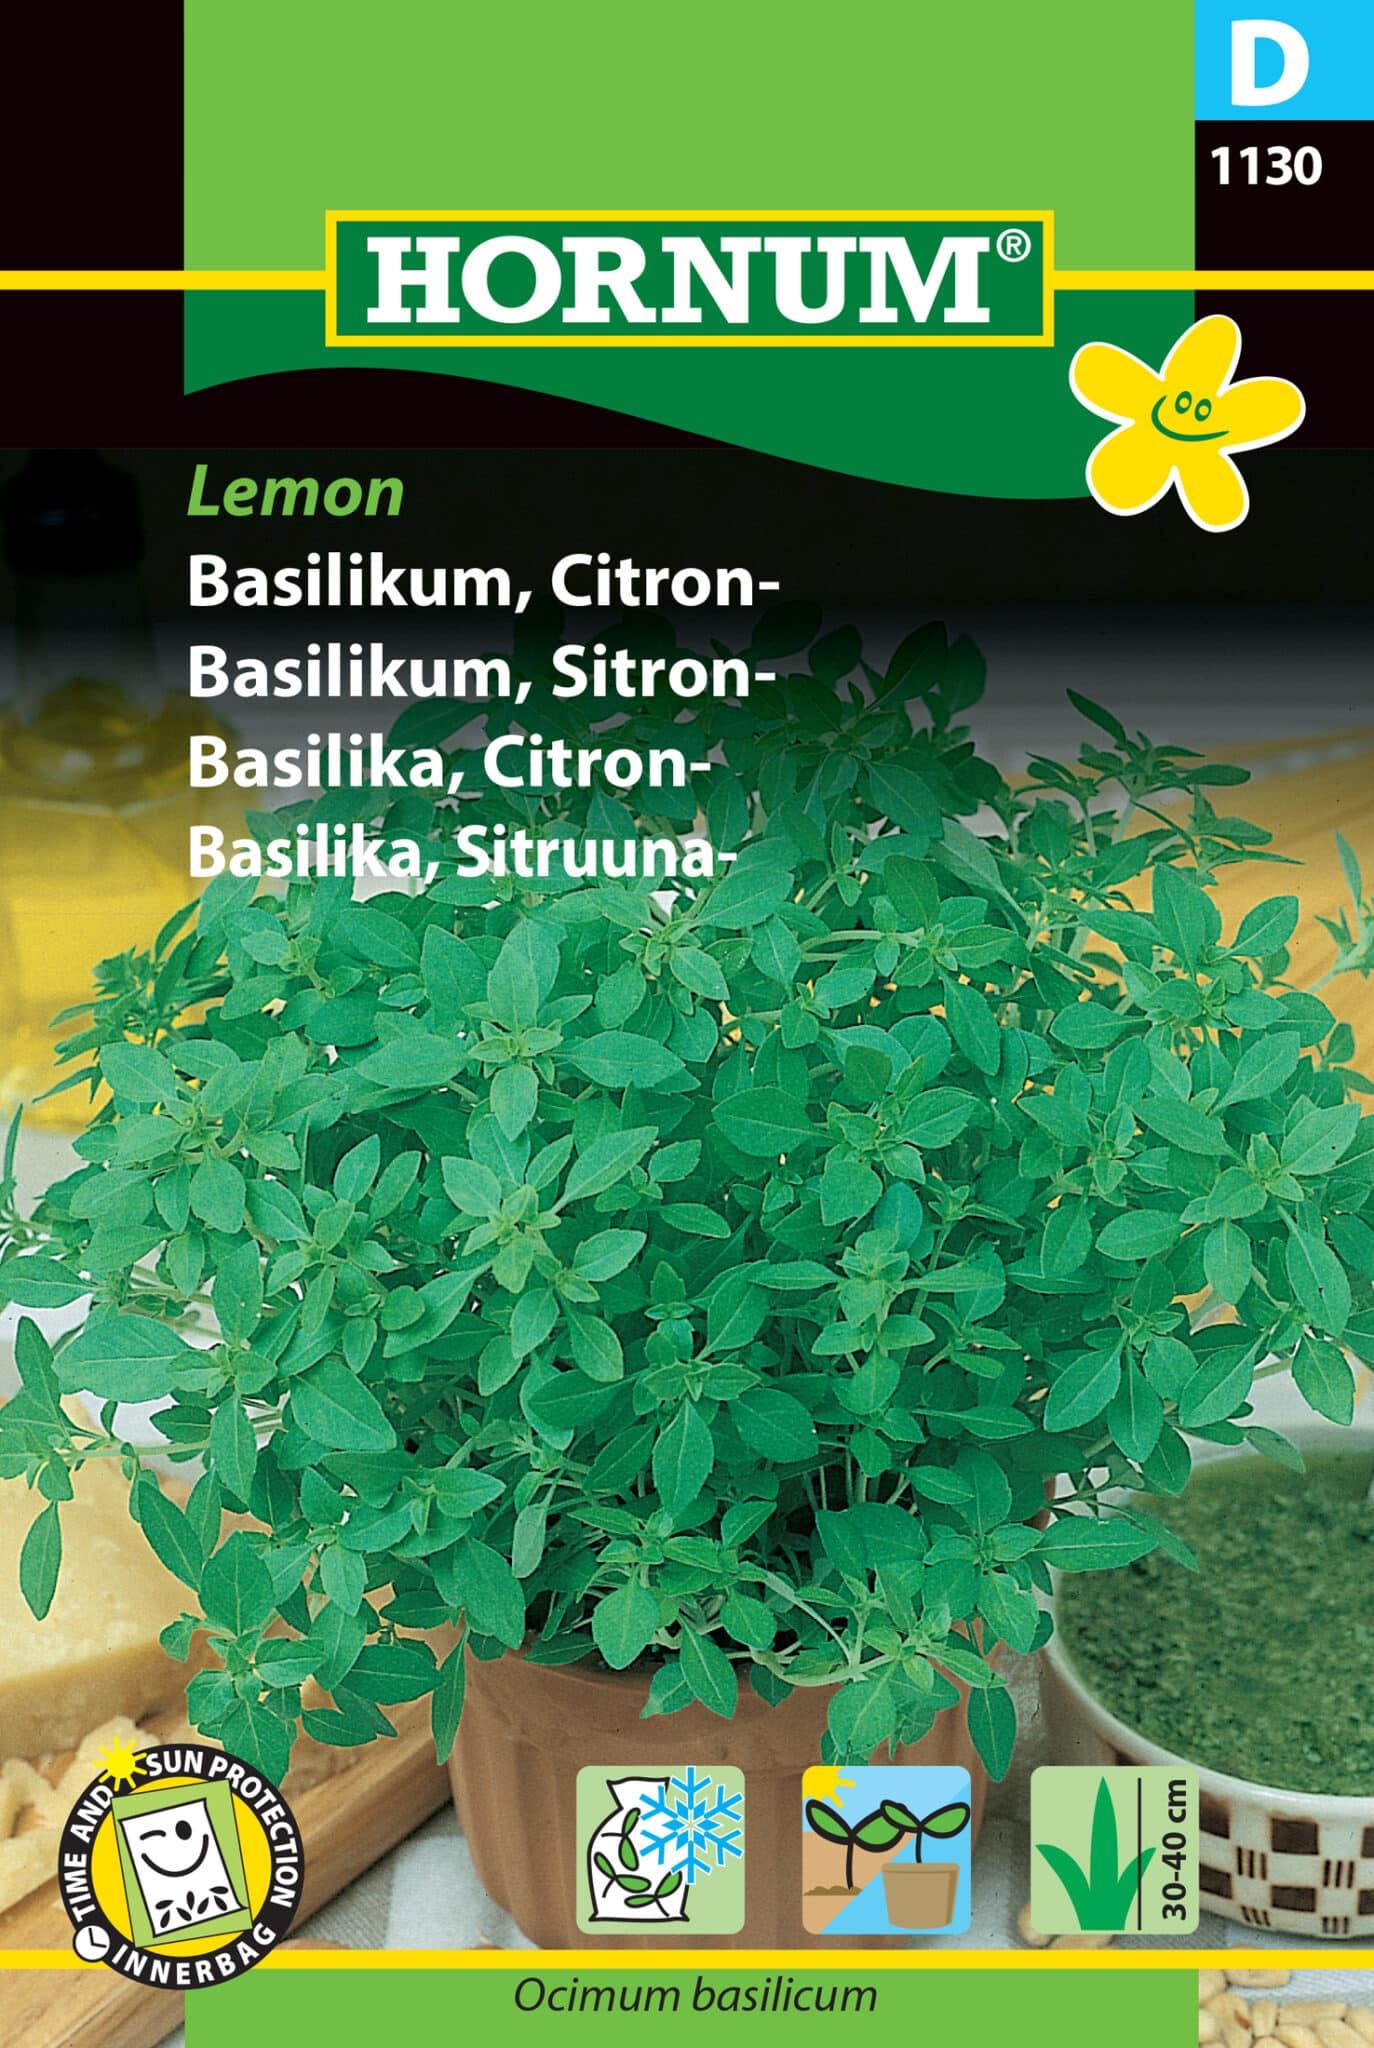 Basilikum Citron 'Lemon' Frø